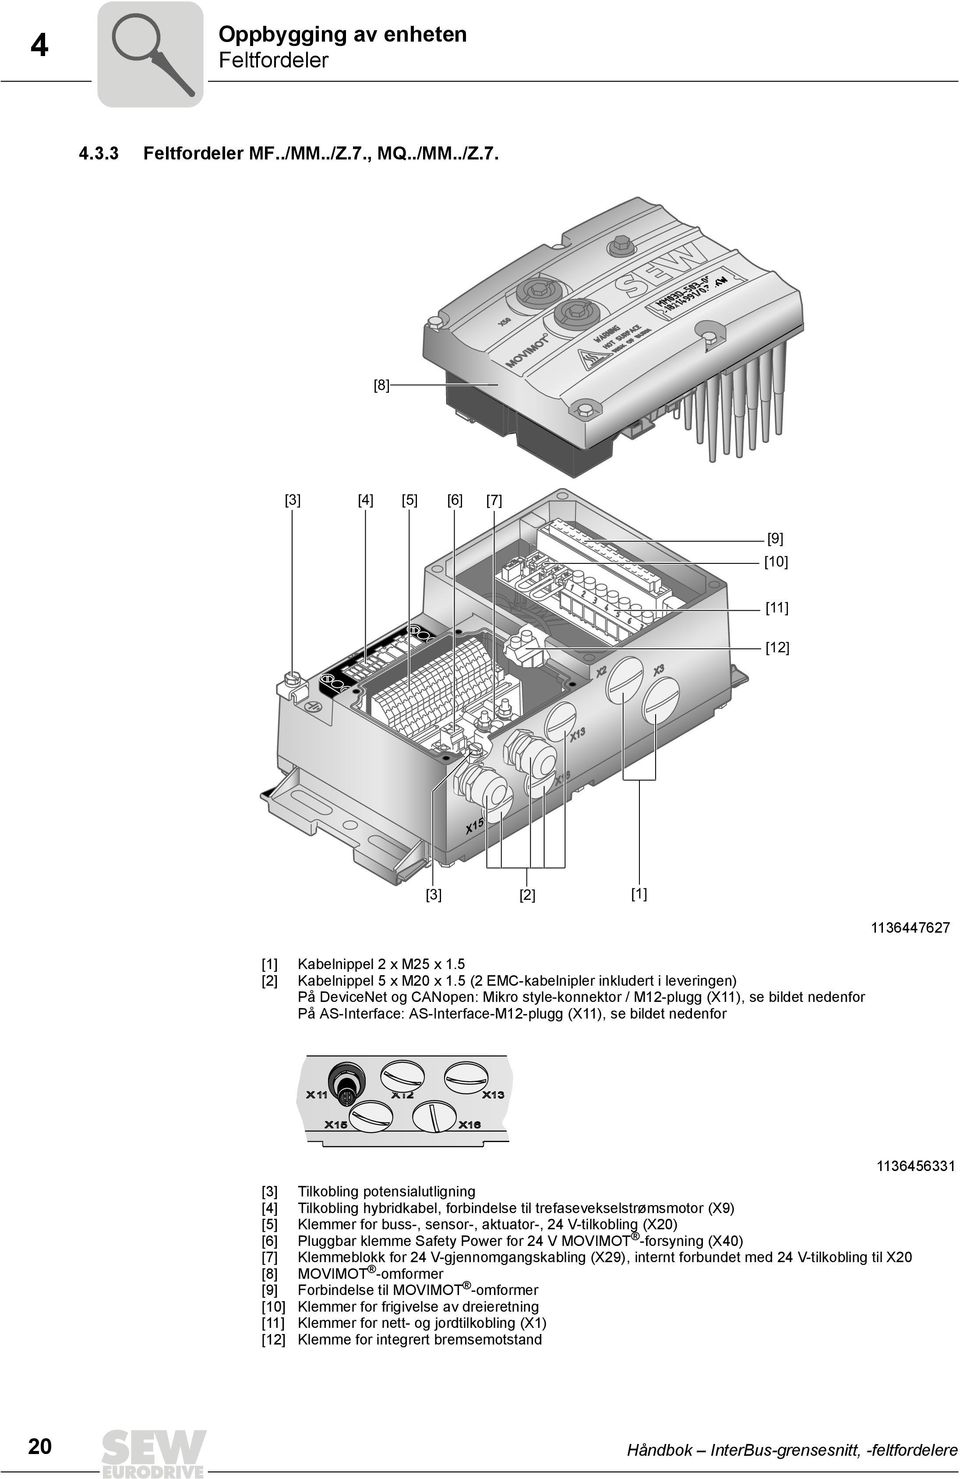 5 (2 EMC-kabelnipler inkludert i leveringen) På DeviceNet og CANopen: Mikro style-konnektor / M12-plugg (X11), se bildet nedenfor På AS-Interface: AS-Interface-M12-plugg (X11), se bildet nedenfor [3]